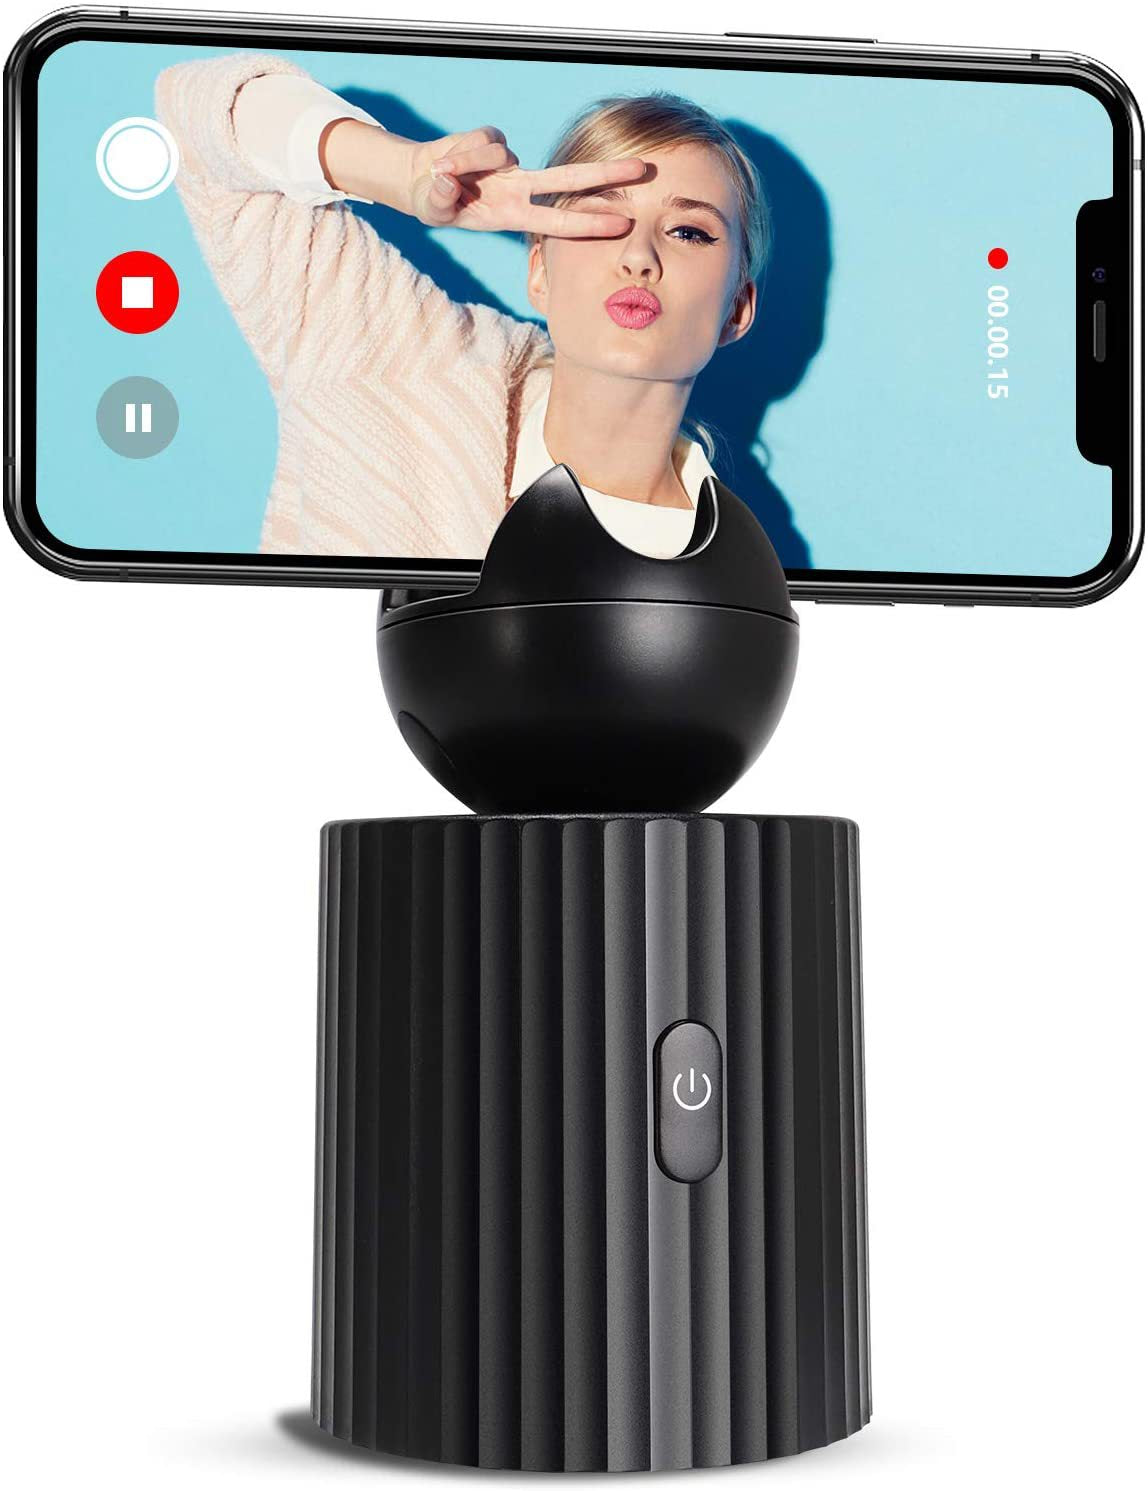 Rechargeable Smart Portable Selfie Stick